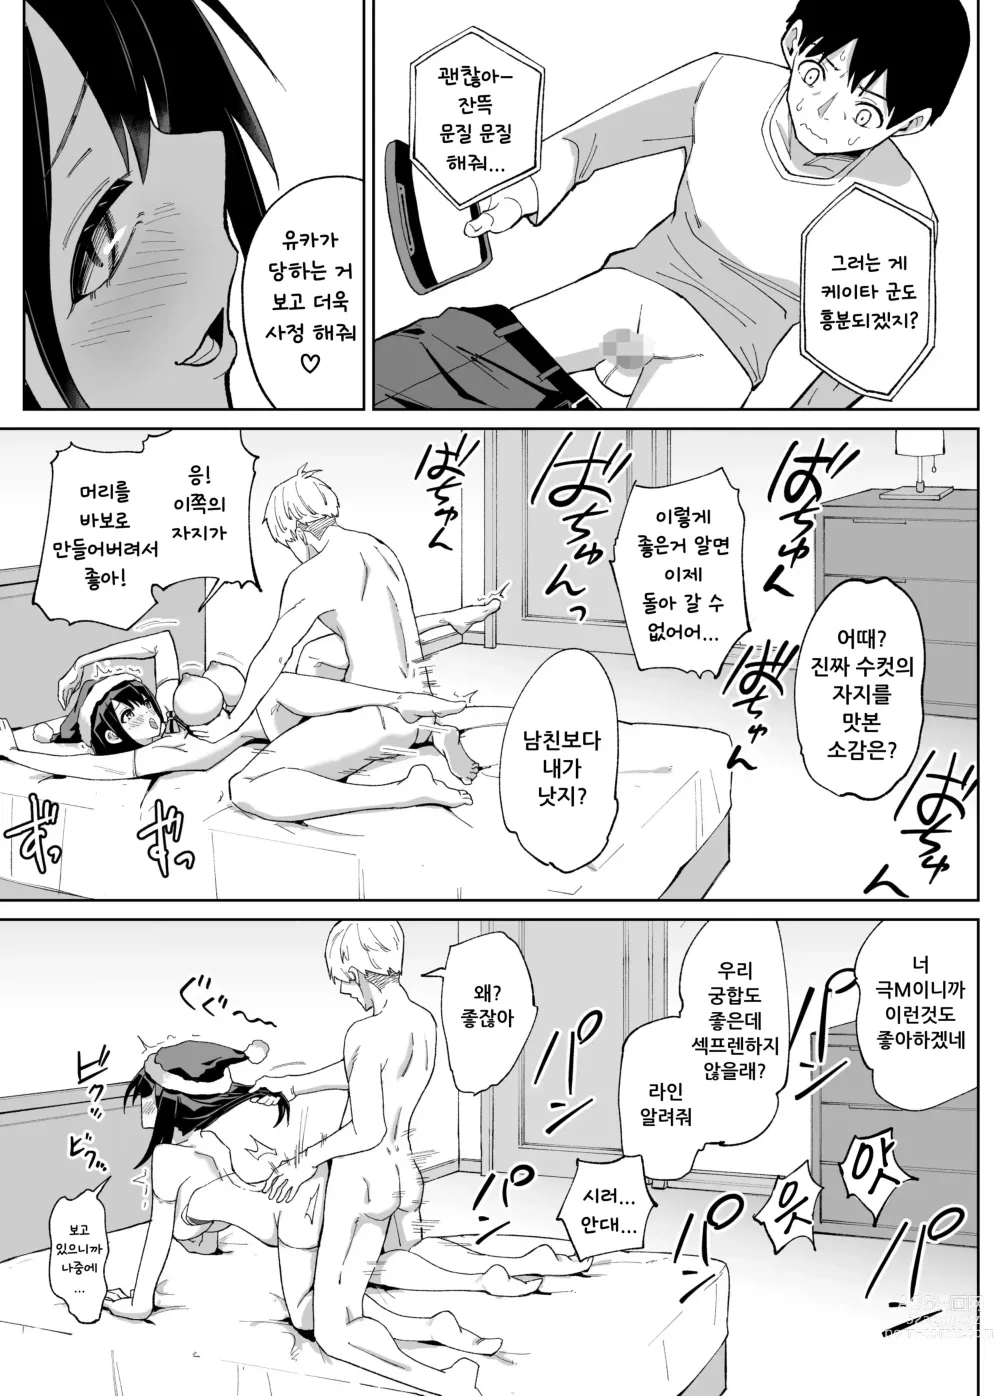 Page 30 of doujinshi 소꿉친구인 그녀에게 받은 X'mas 선물은 네토라레 였습니다